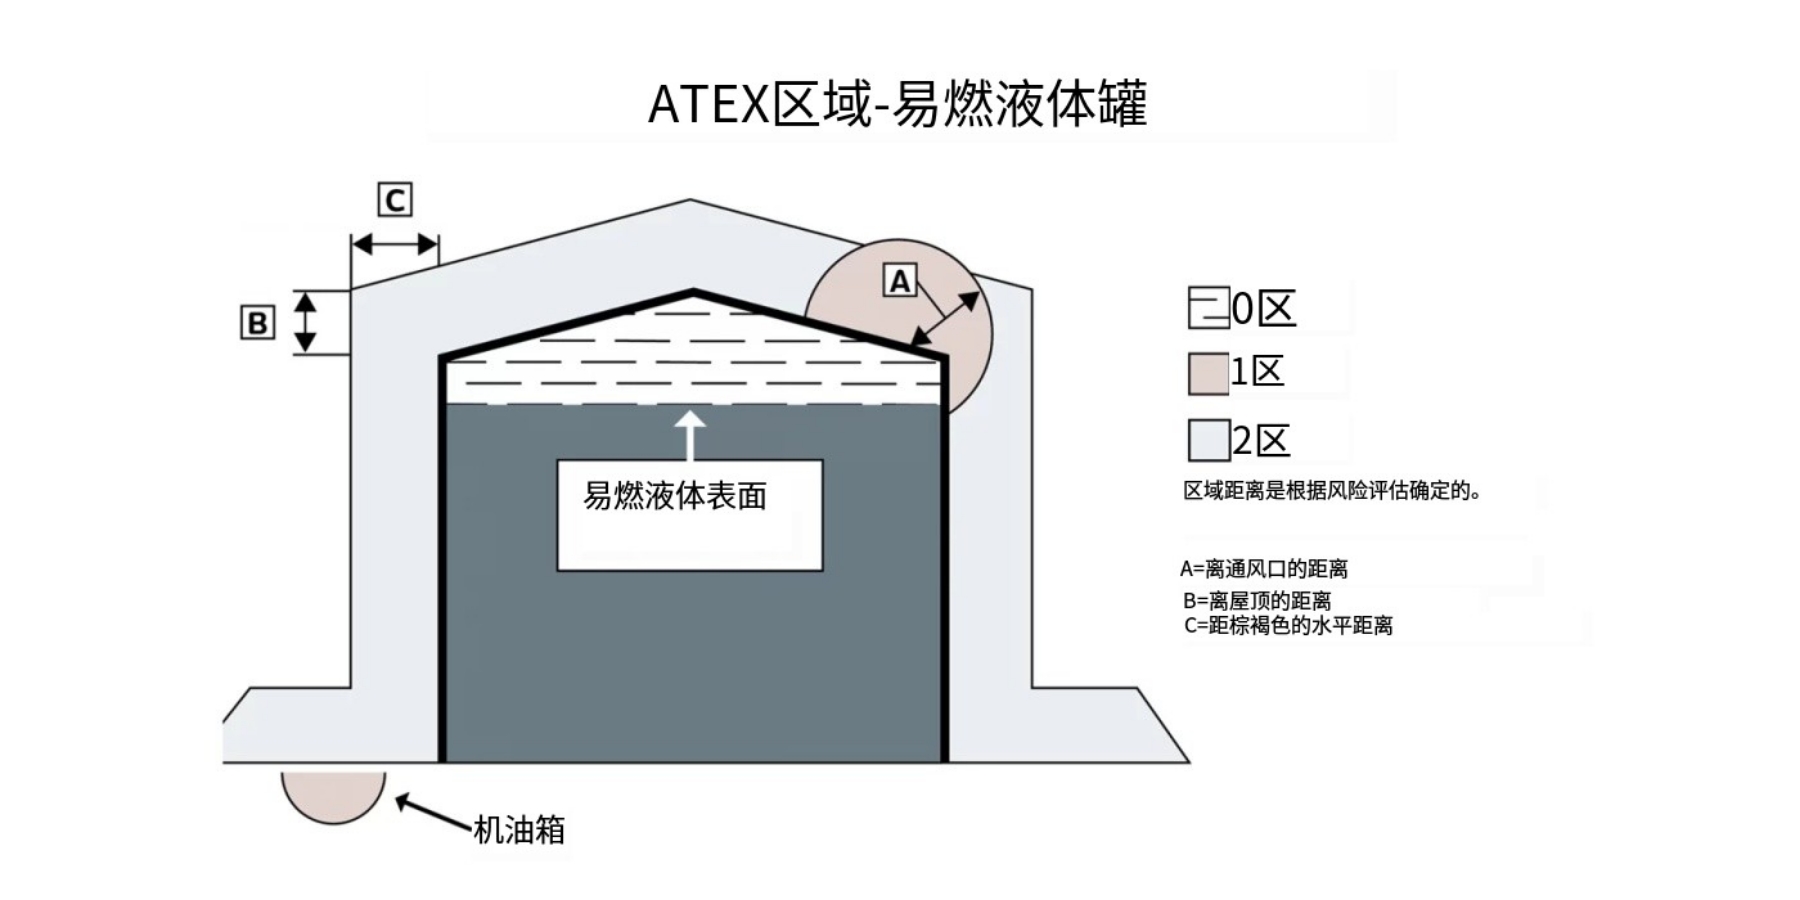 ATEX区域 - 易燃液体罐